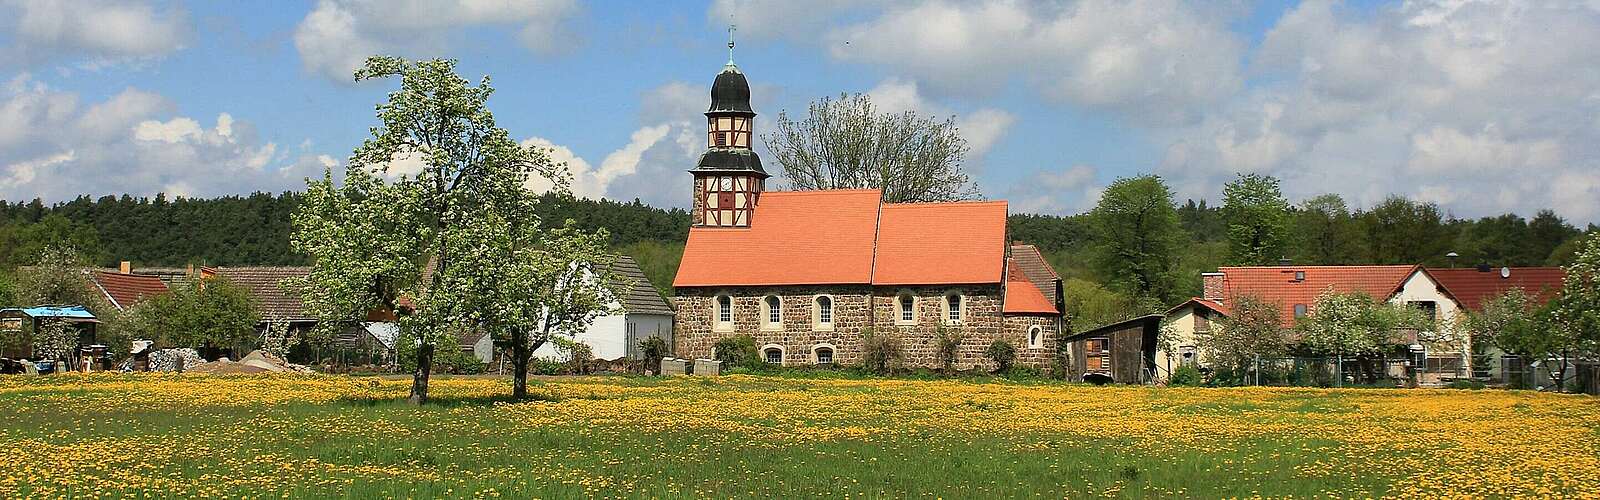 Blick auf die Dorfkirche Raben,
        
    

        Foto: Fotograf / Lizenz - Media Import/Fotograf / Lizenz - Media Import